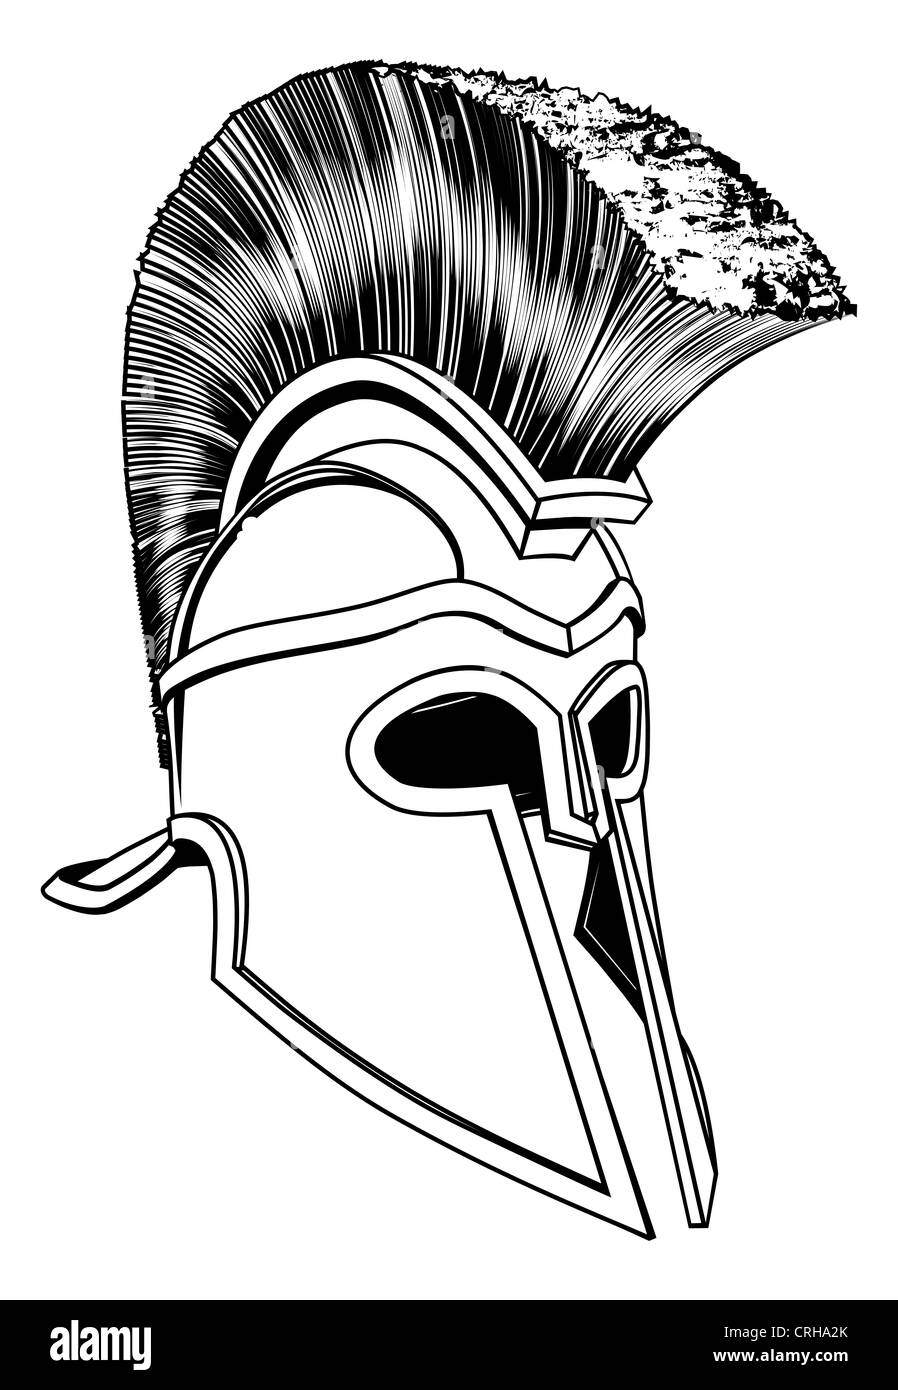 Illustration monochrome d'un casque corinthien bronze spartiate ou comme ceux utilisés dans l'ancienne Grèce ou Rome Banque D'Images